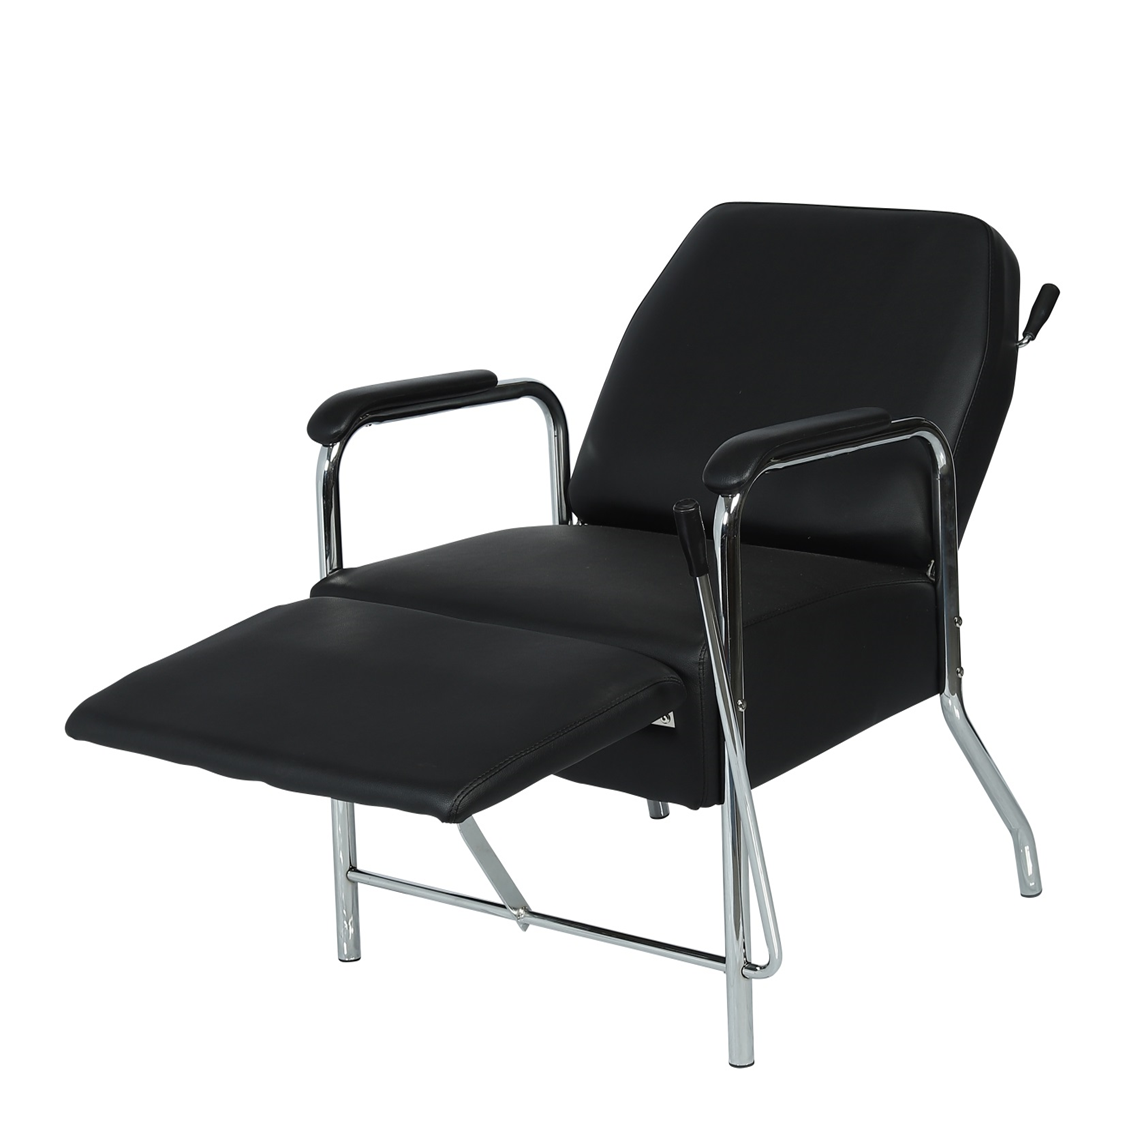 Carson Salon Shampoo Chair - Garfield Commercial Enterprises Salon Equipment Spa Furniture Barber Chair Luxury